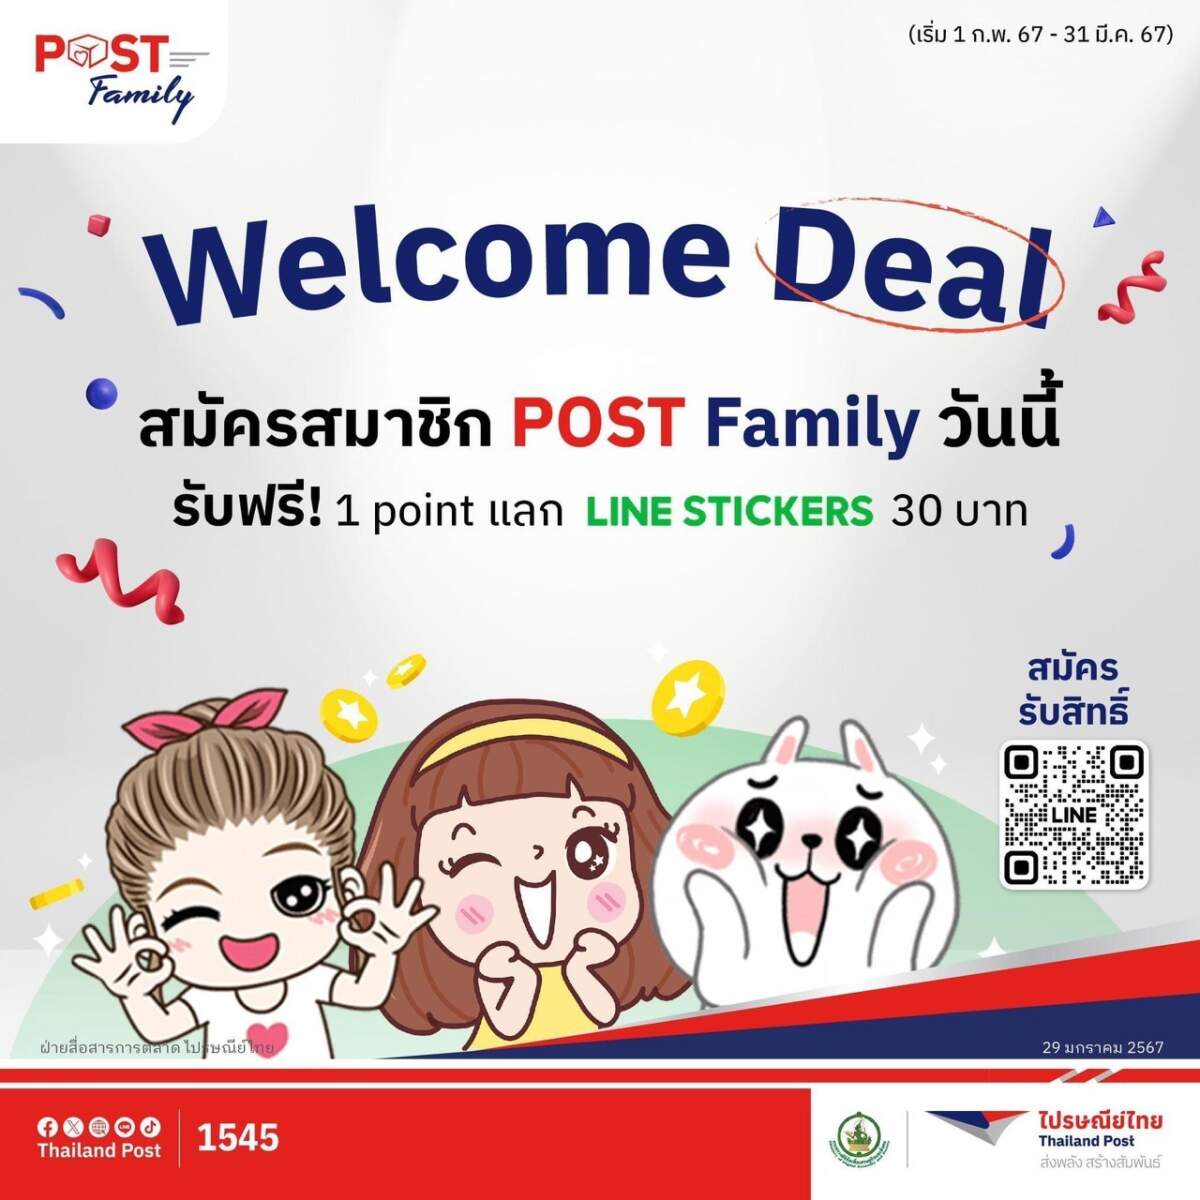 ไปรษณีย์ไทย จัด โปรปัง สะสม แลกดีล ส่งความสุขให้สมาชิก POST Family สมัครวันนี้ รับฟรีคะแนนสะสม พร้อมแลกรับสติกเกอร์ LINE สุดน่ารัก